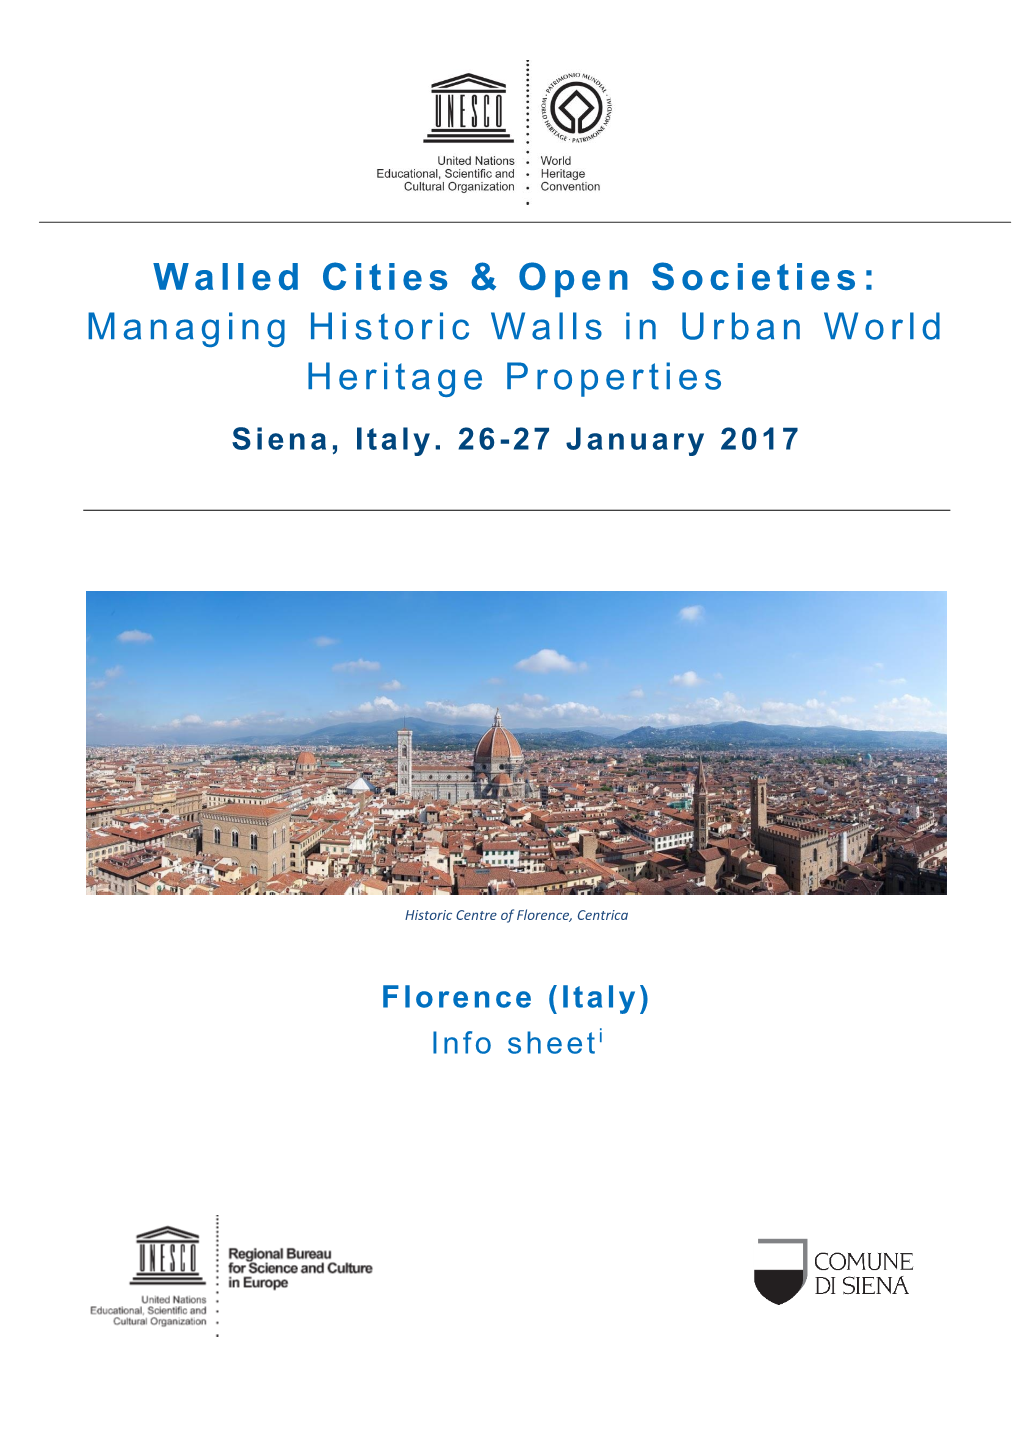 Walled Cities & Open Societies: Managing Historic Walls in Urban